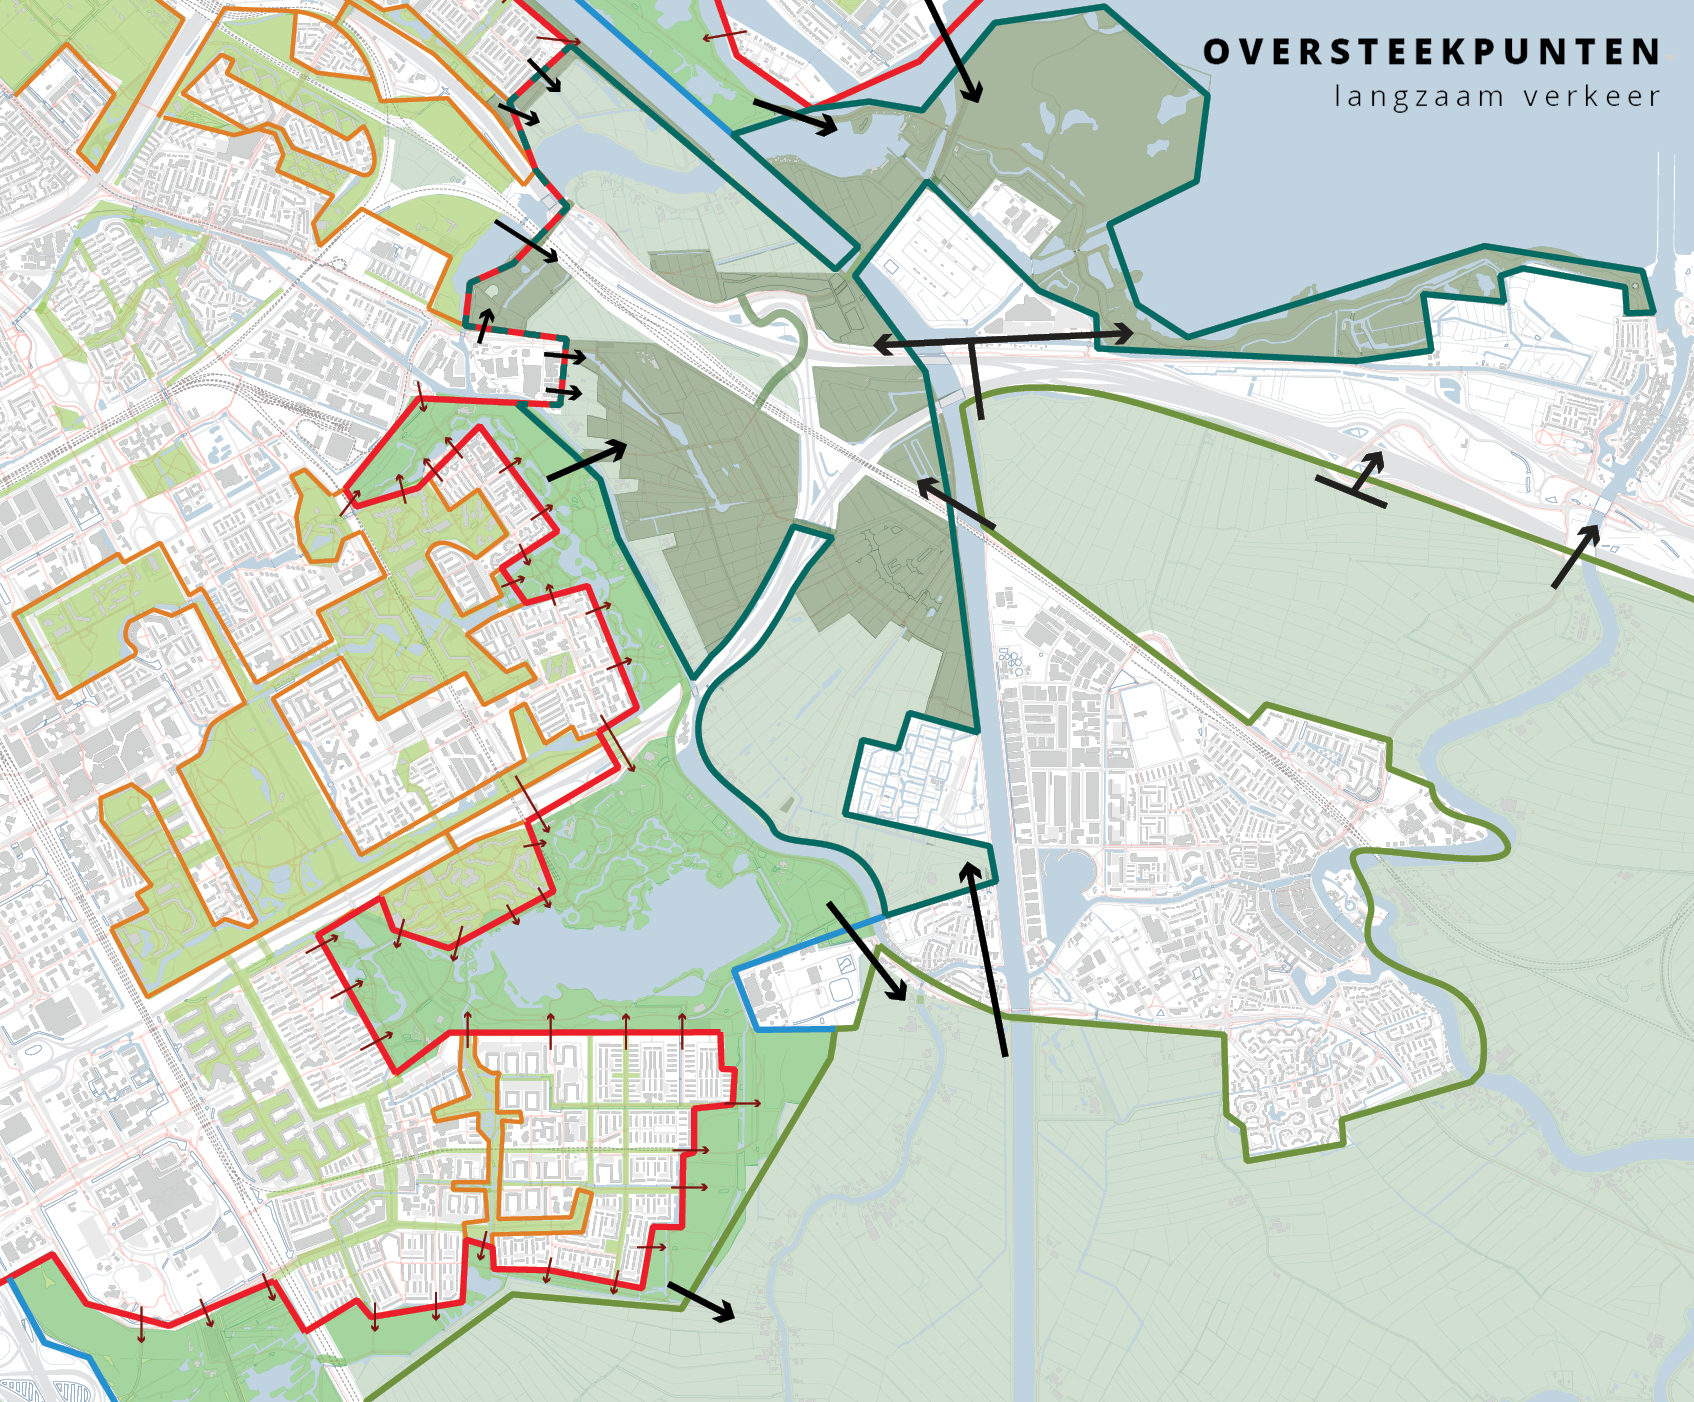 stadsrandenlab- oversteekpunten kreukelzone Diemerscheg-uitsnede